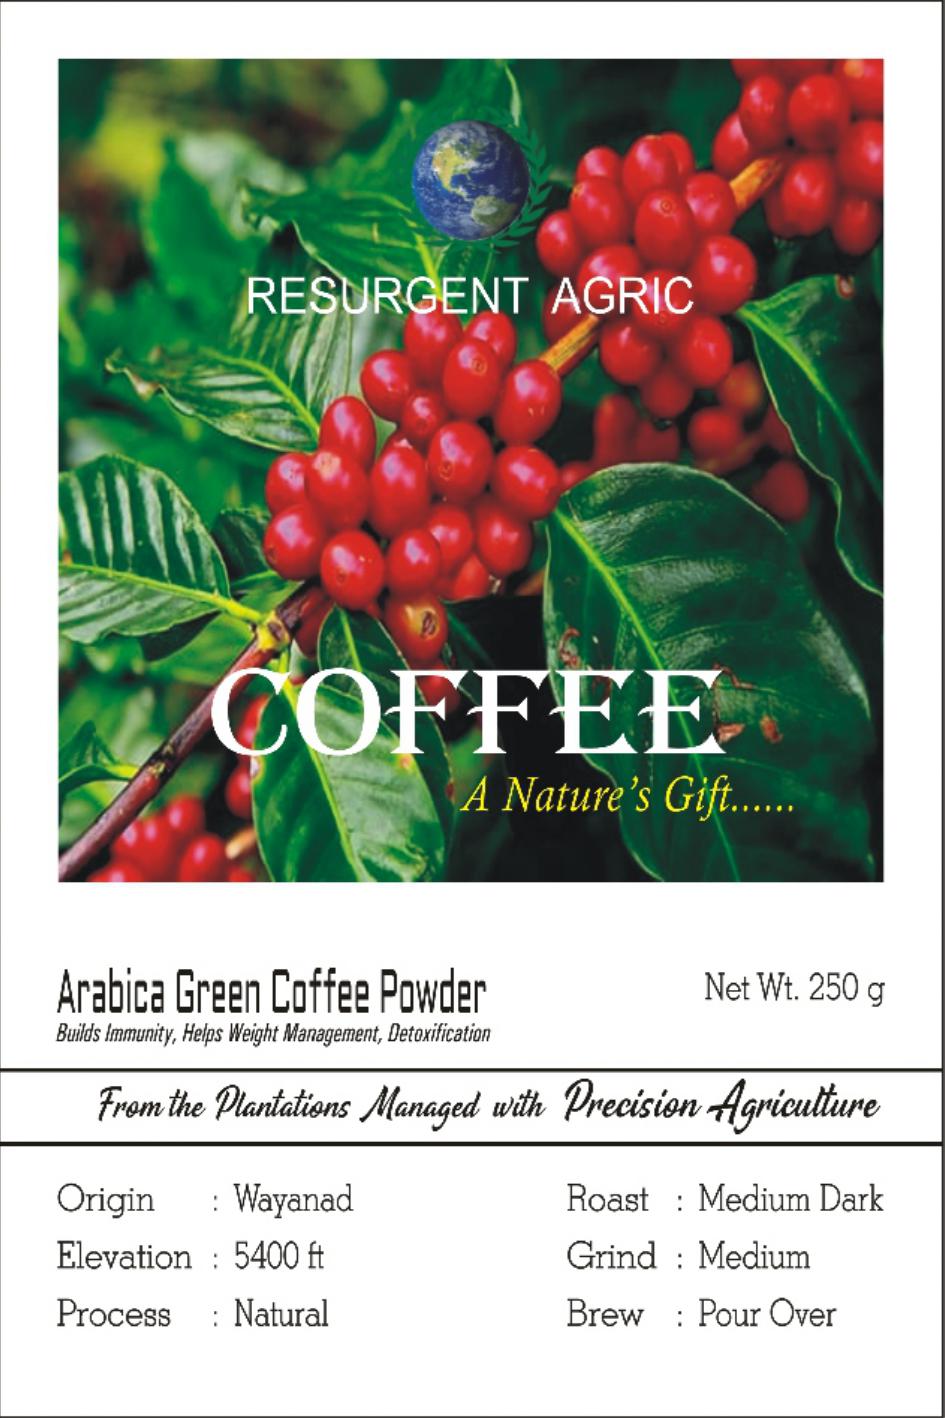 Arabica Green Coffee Powder (Medium Dark - Medium)